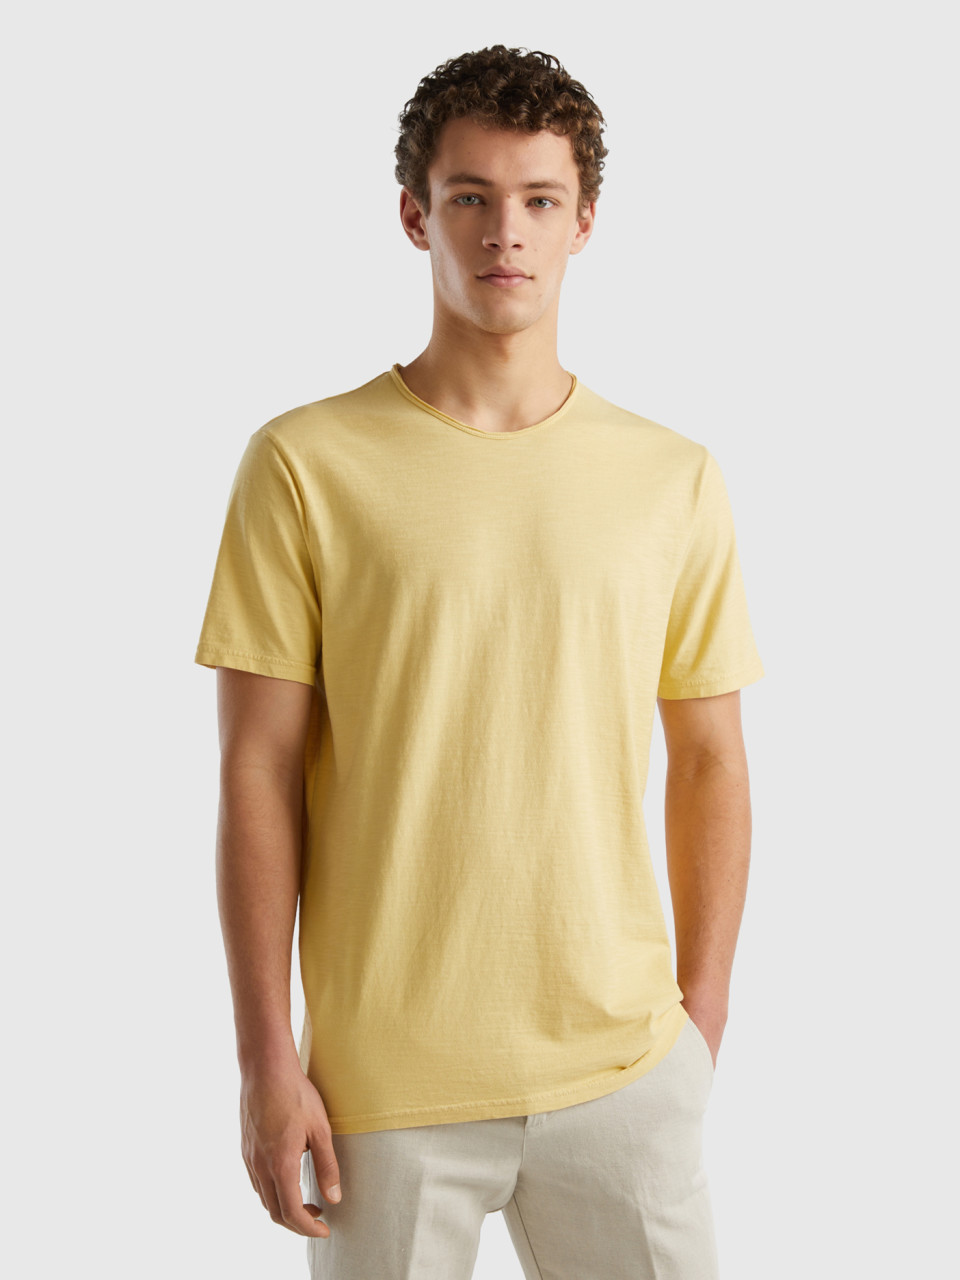 Benetton, T-shirt Giallo Pastello In Cotone Fiammato, Giallo, Uomo